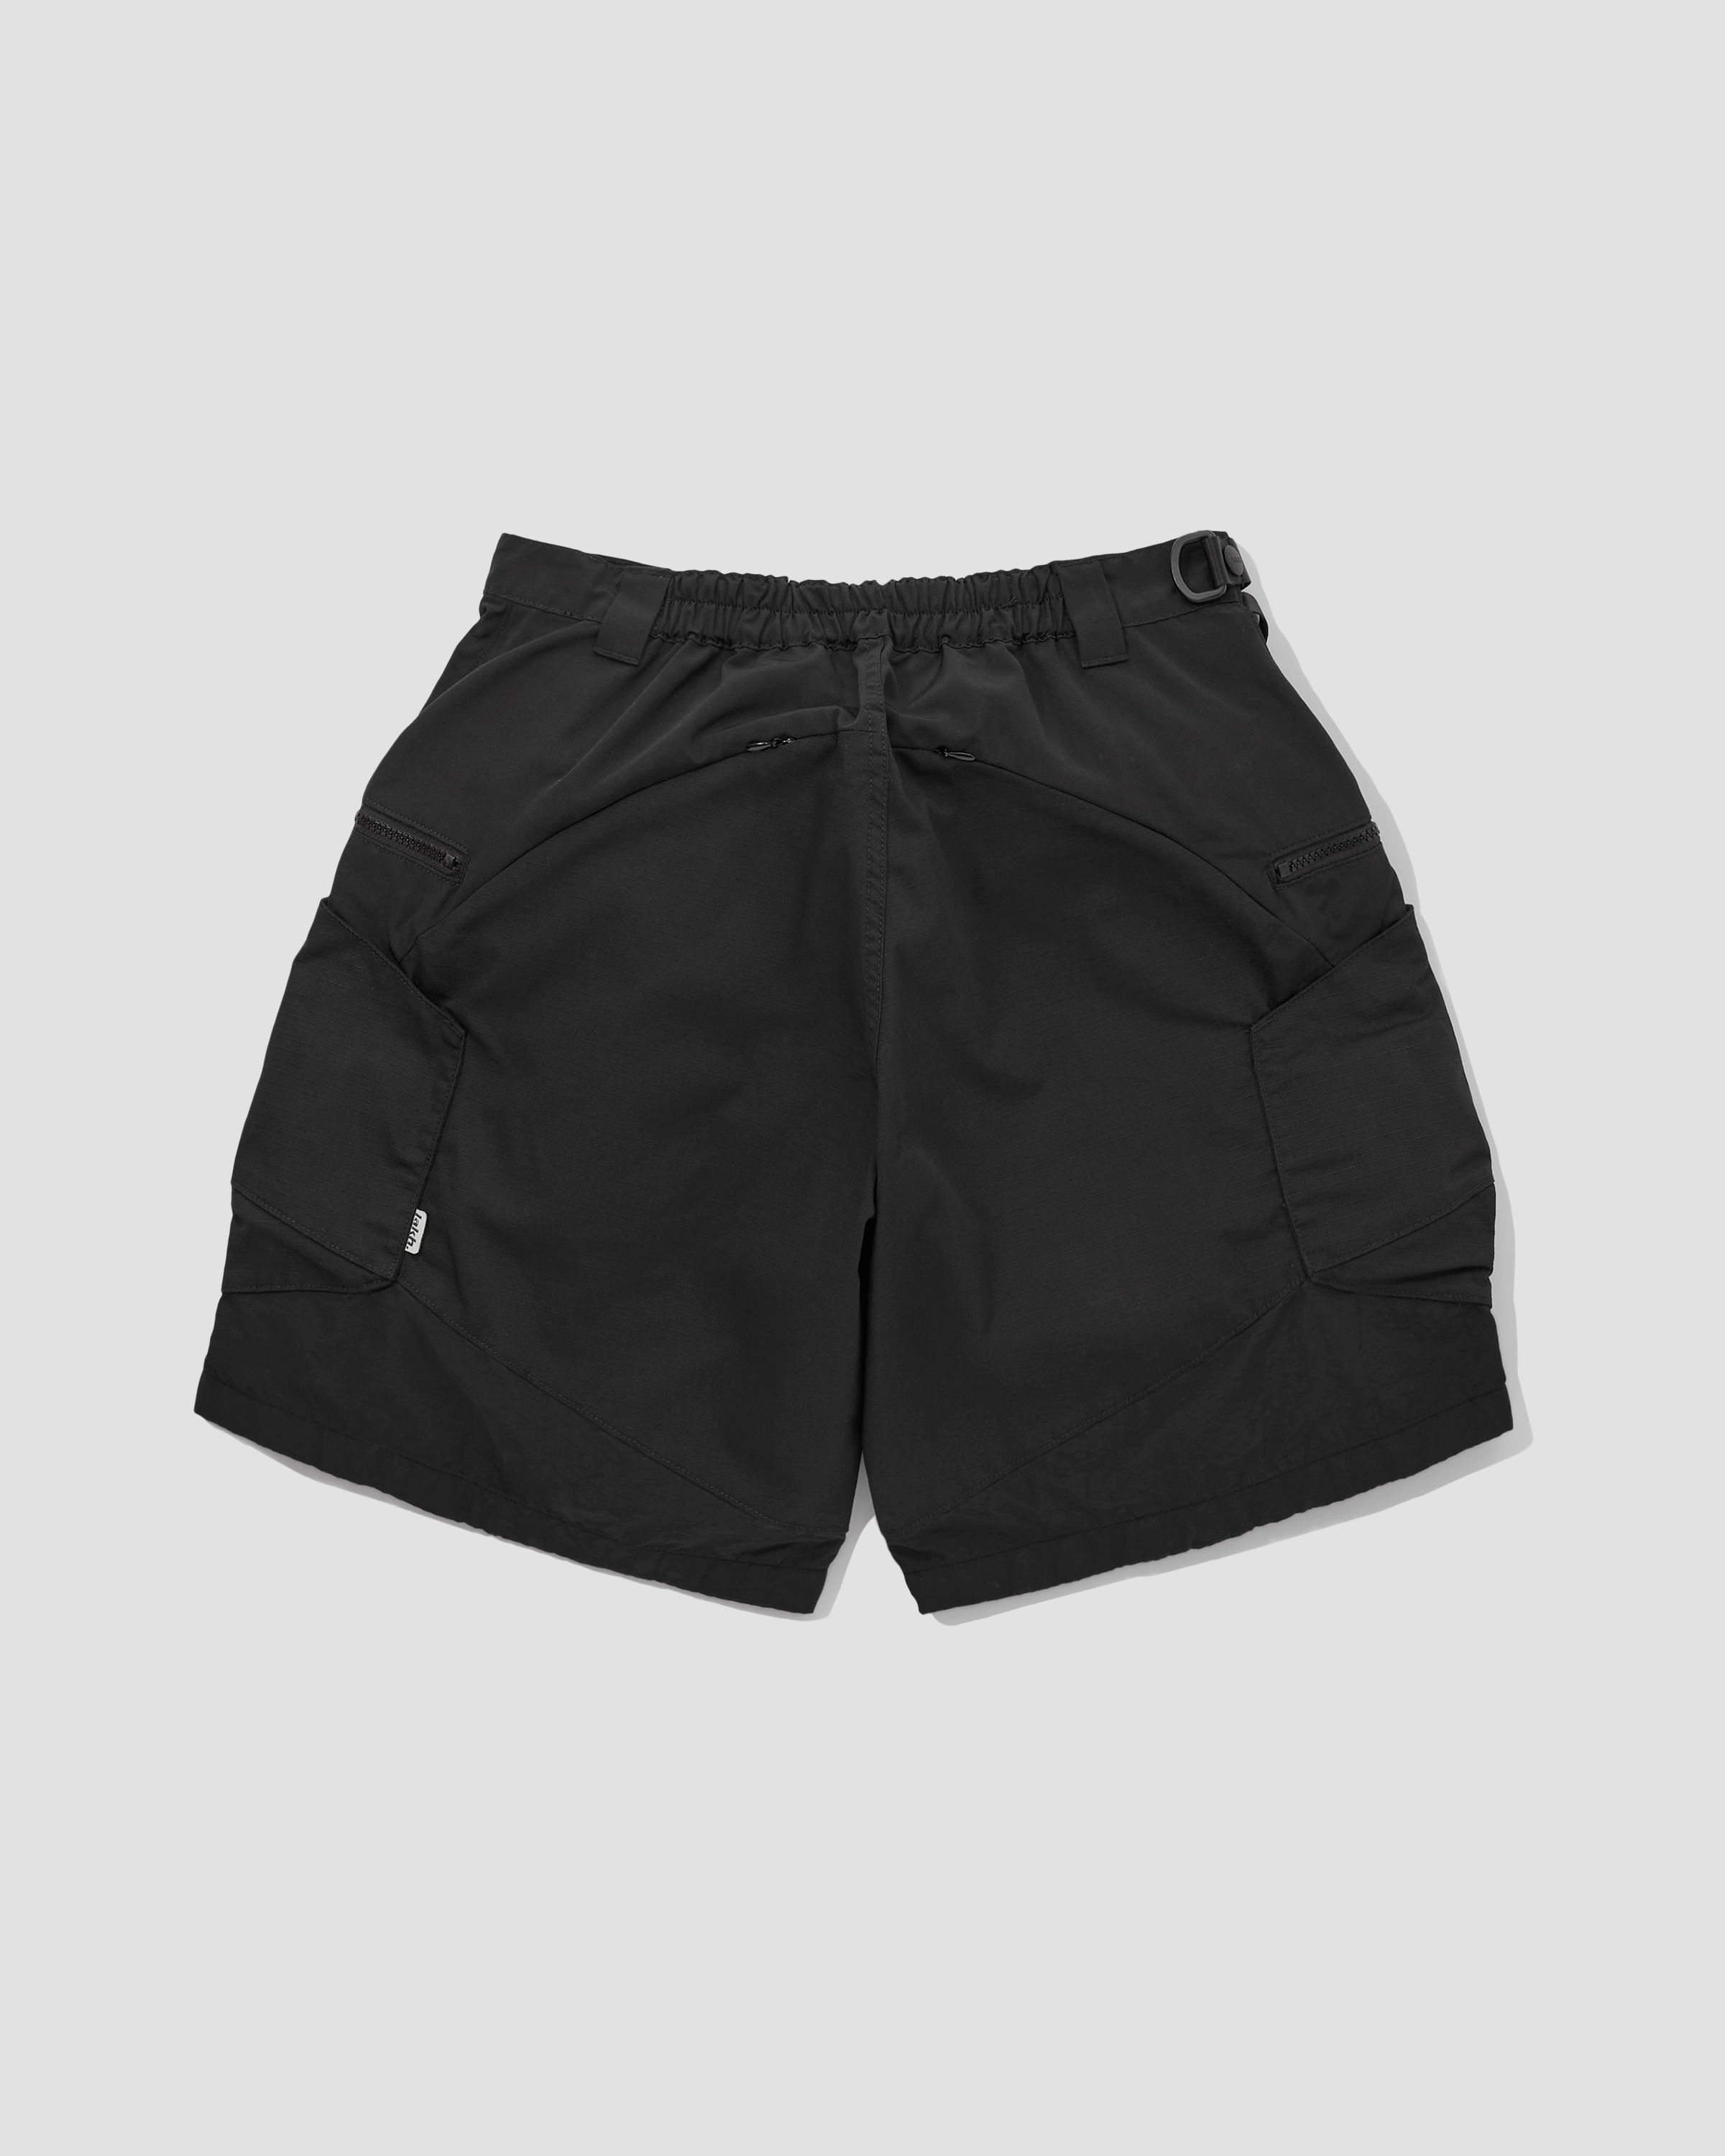 Hexagon Shorts - Black